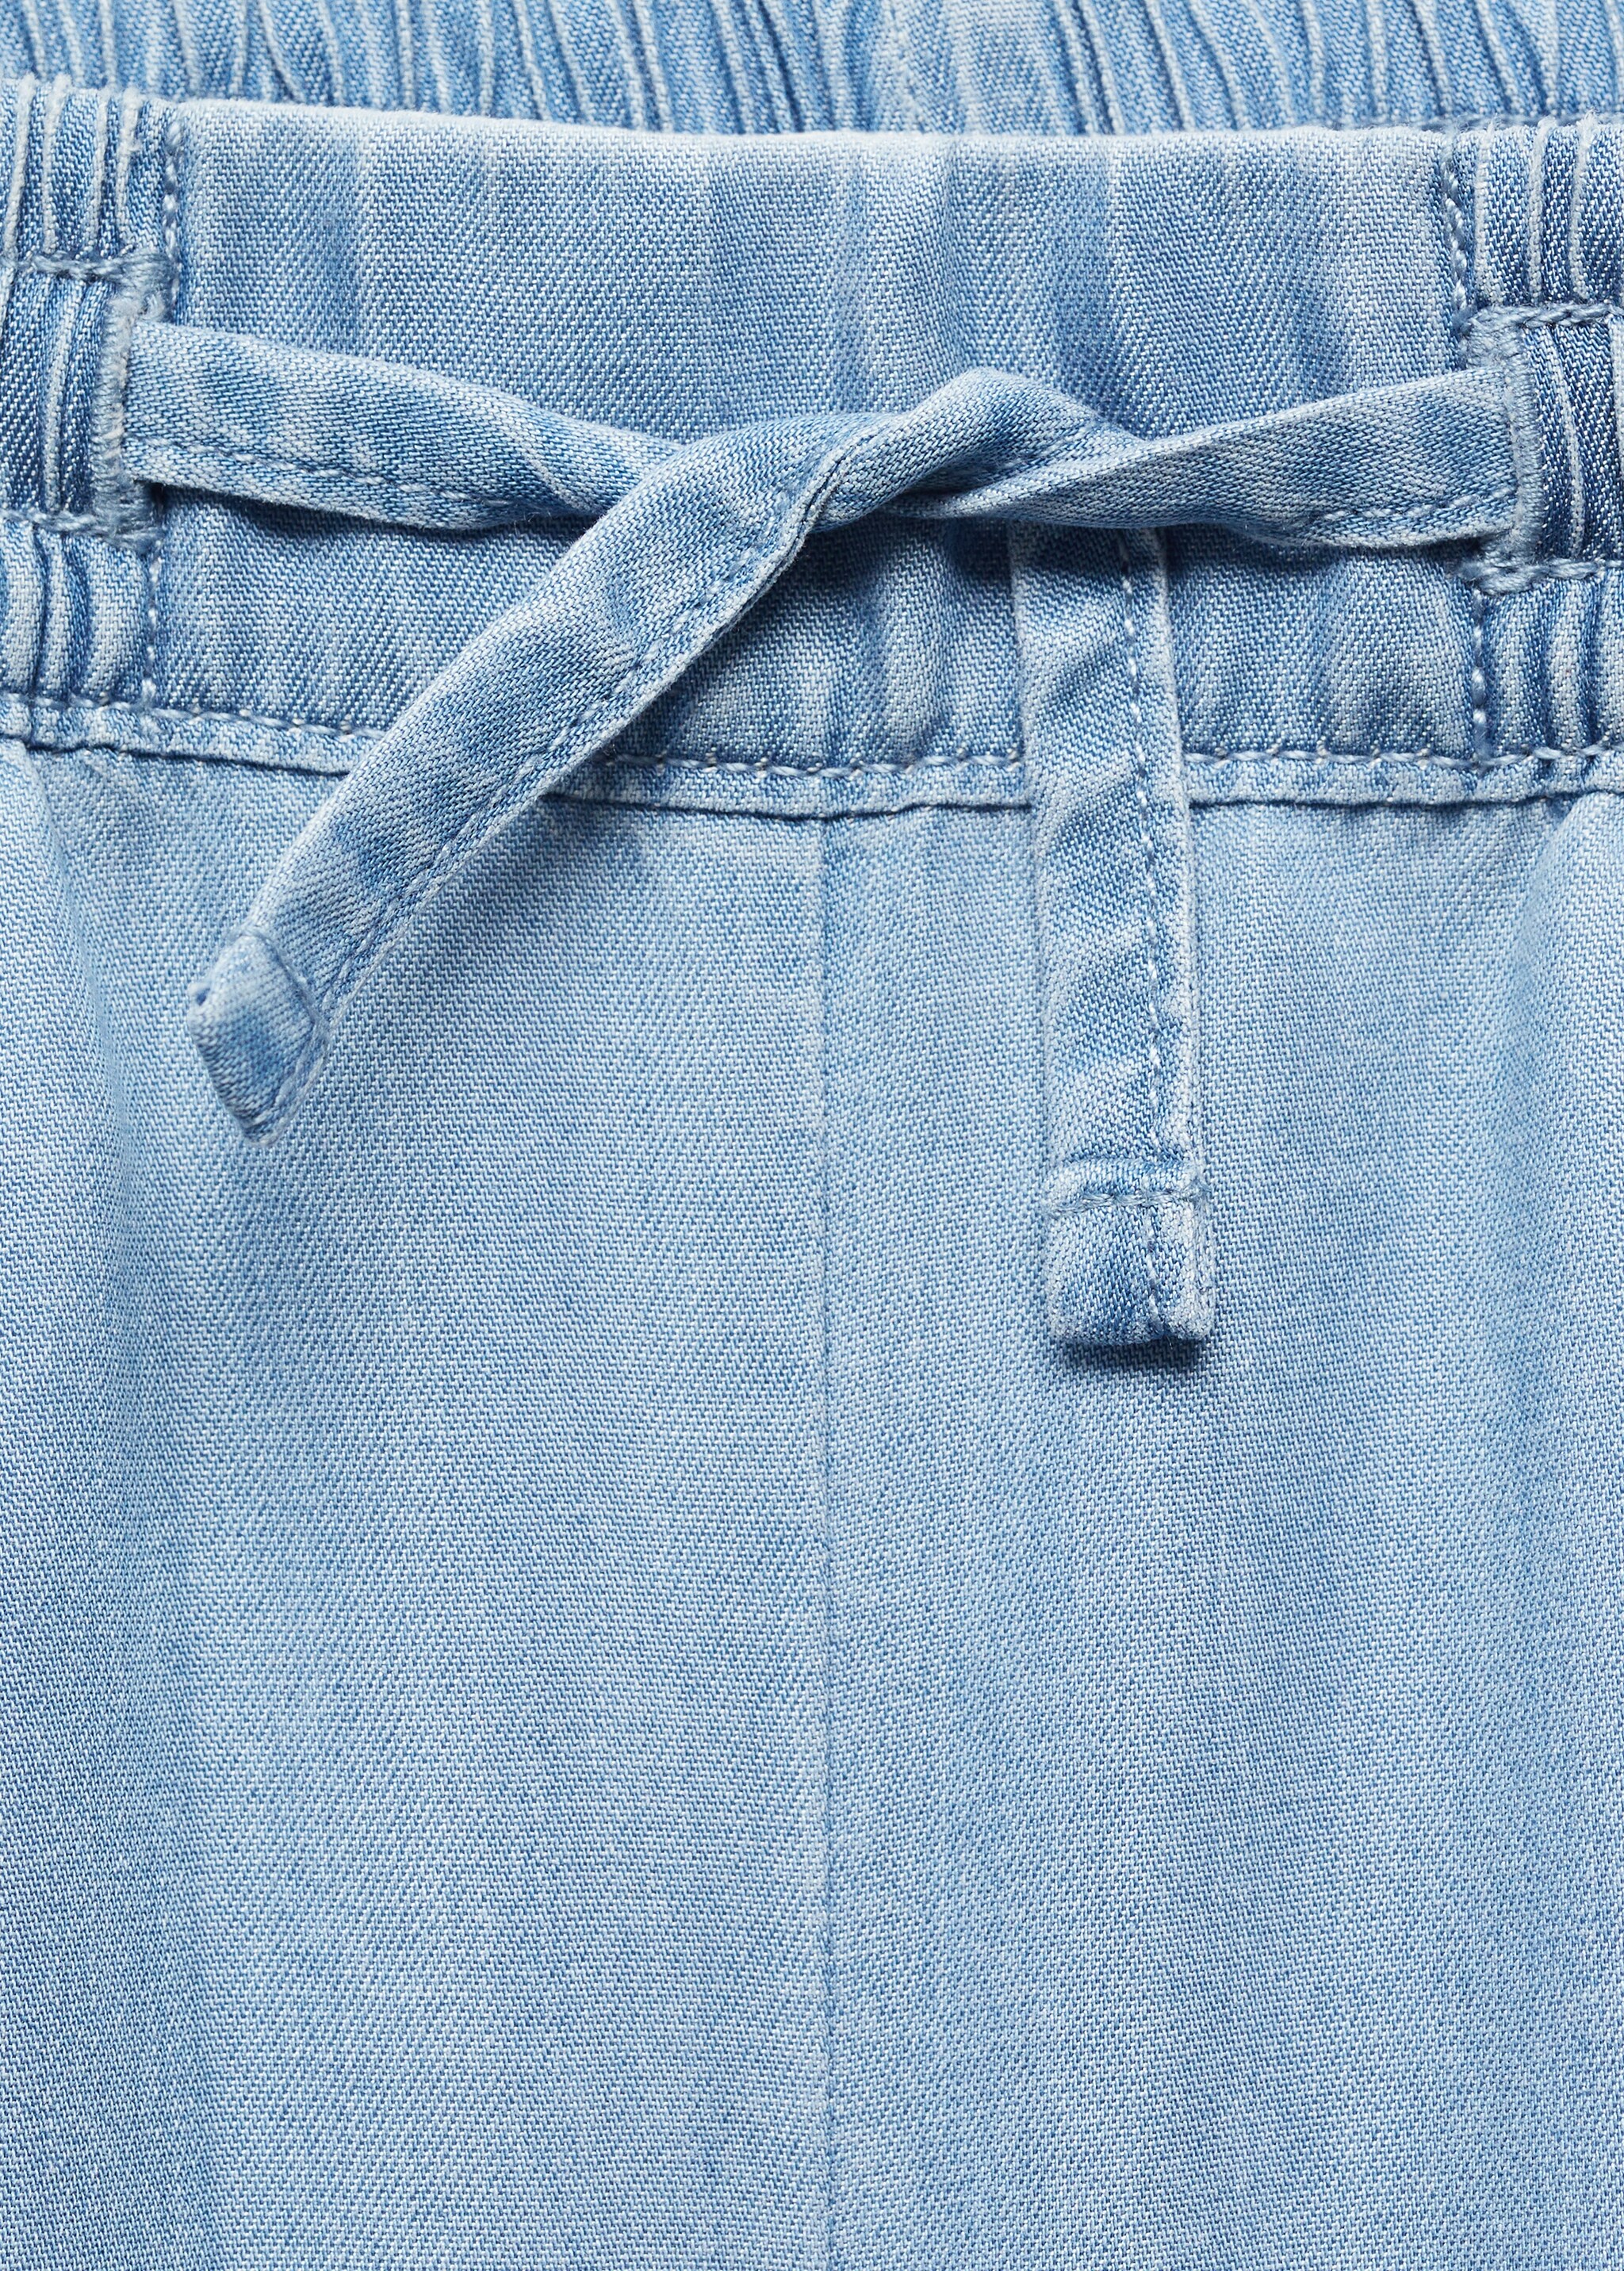 Pantalón lyocell cintura elástica - Detalle del artículo 8